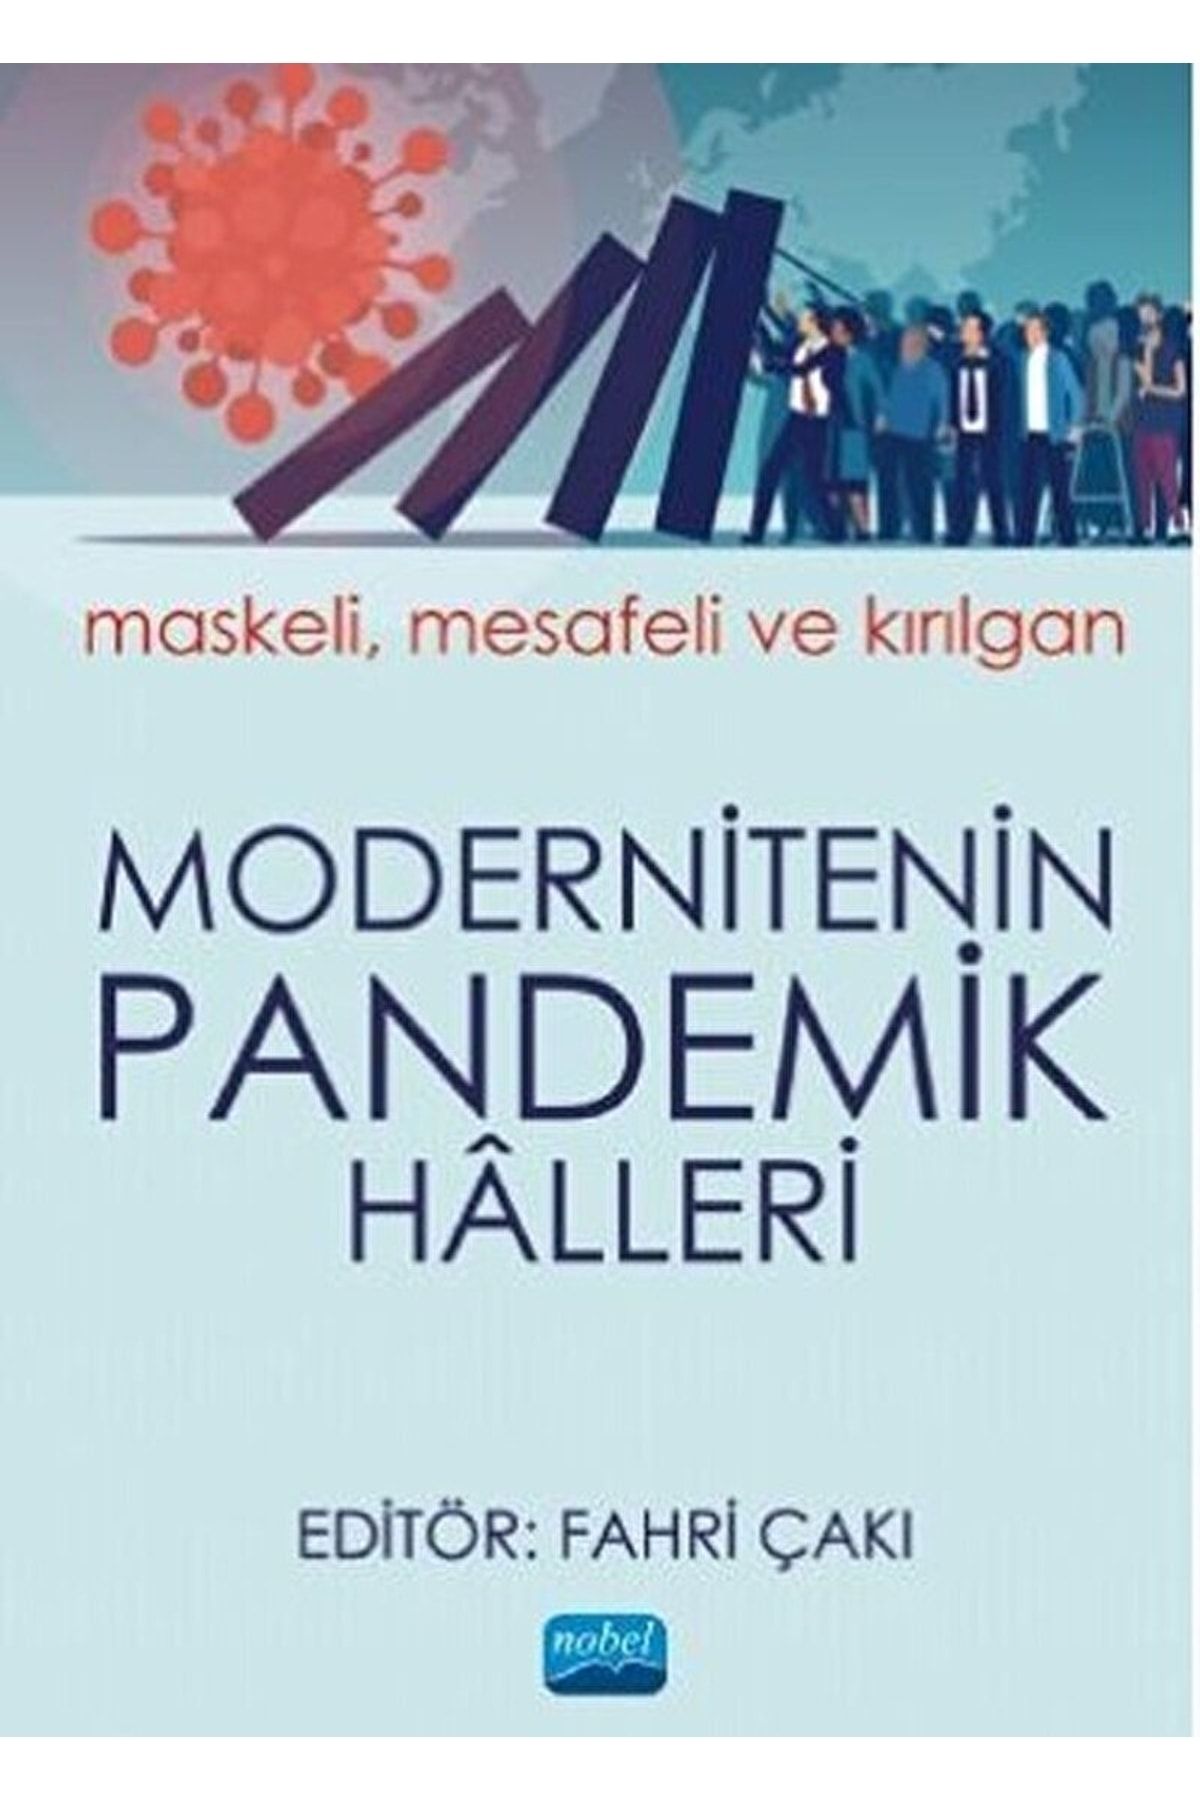 Nobel Akademik Yayıncılık Modernitenin Pandemik Halleri: Maskeli-mesafeli Ve Kırılgan